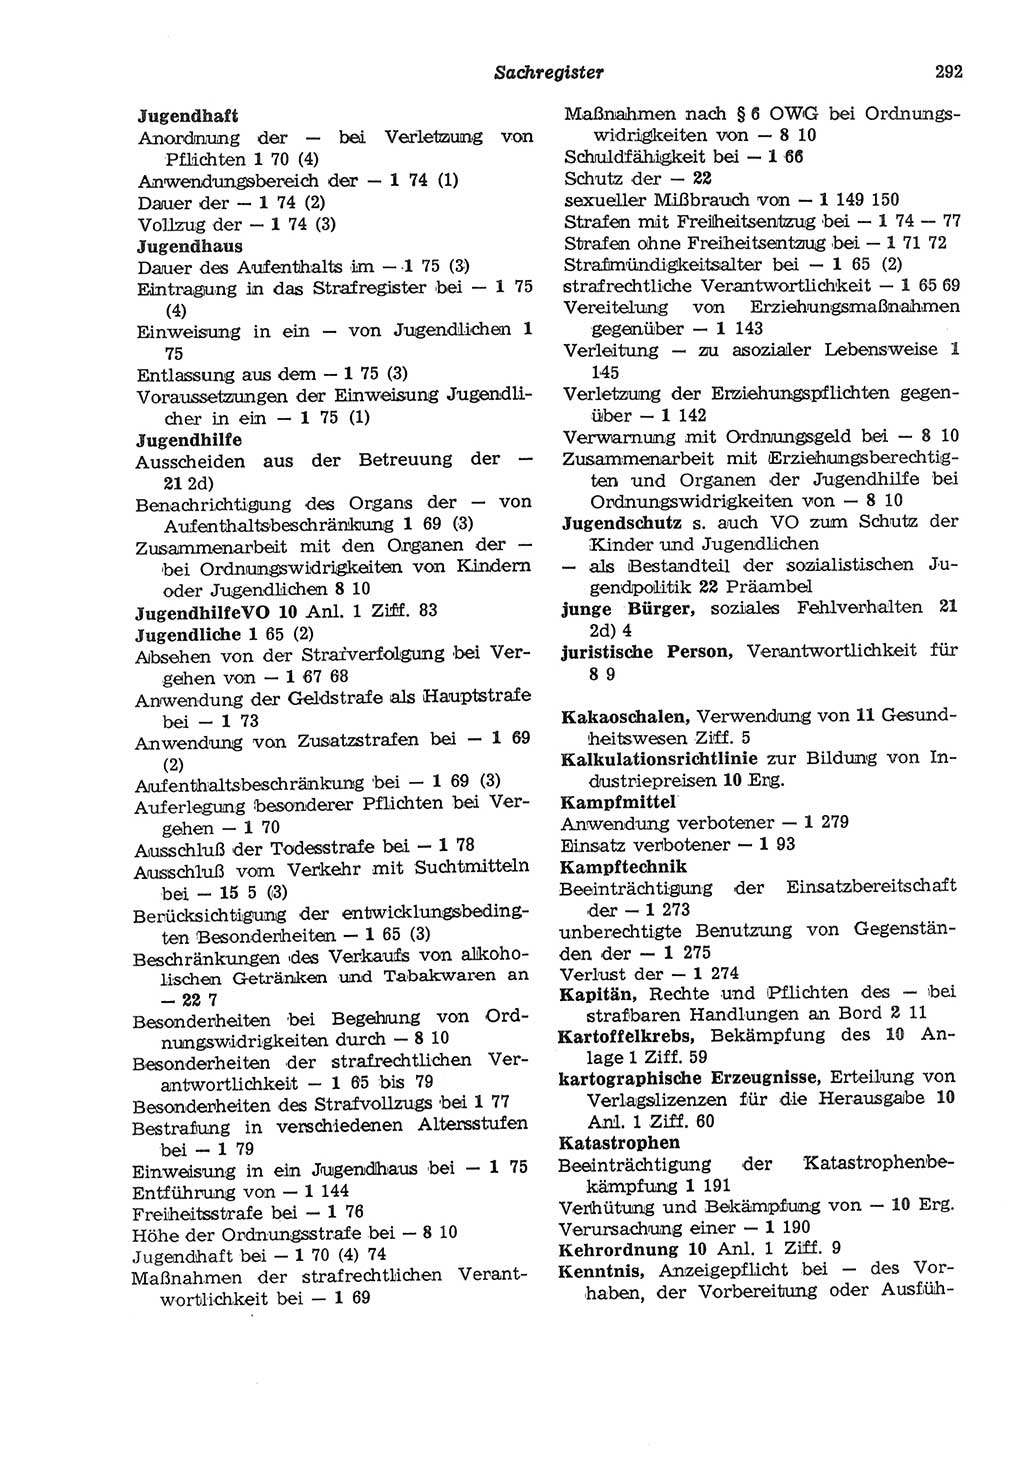 Strafgesetzbuch (StGB) der Deutschen Demokratischen Republik (DDR) und angrenzende Gesetze und Bestimmungen 1975, Seite 292 (StGB DDR Ges. Best. 1975, S. 292)